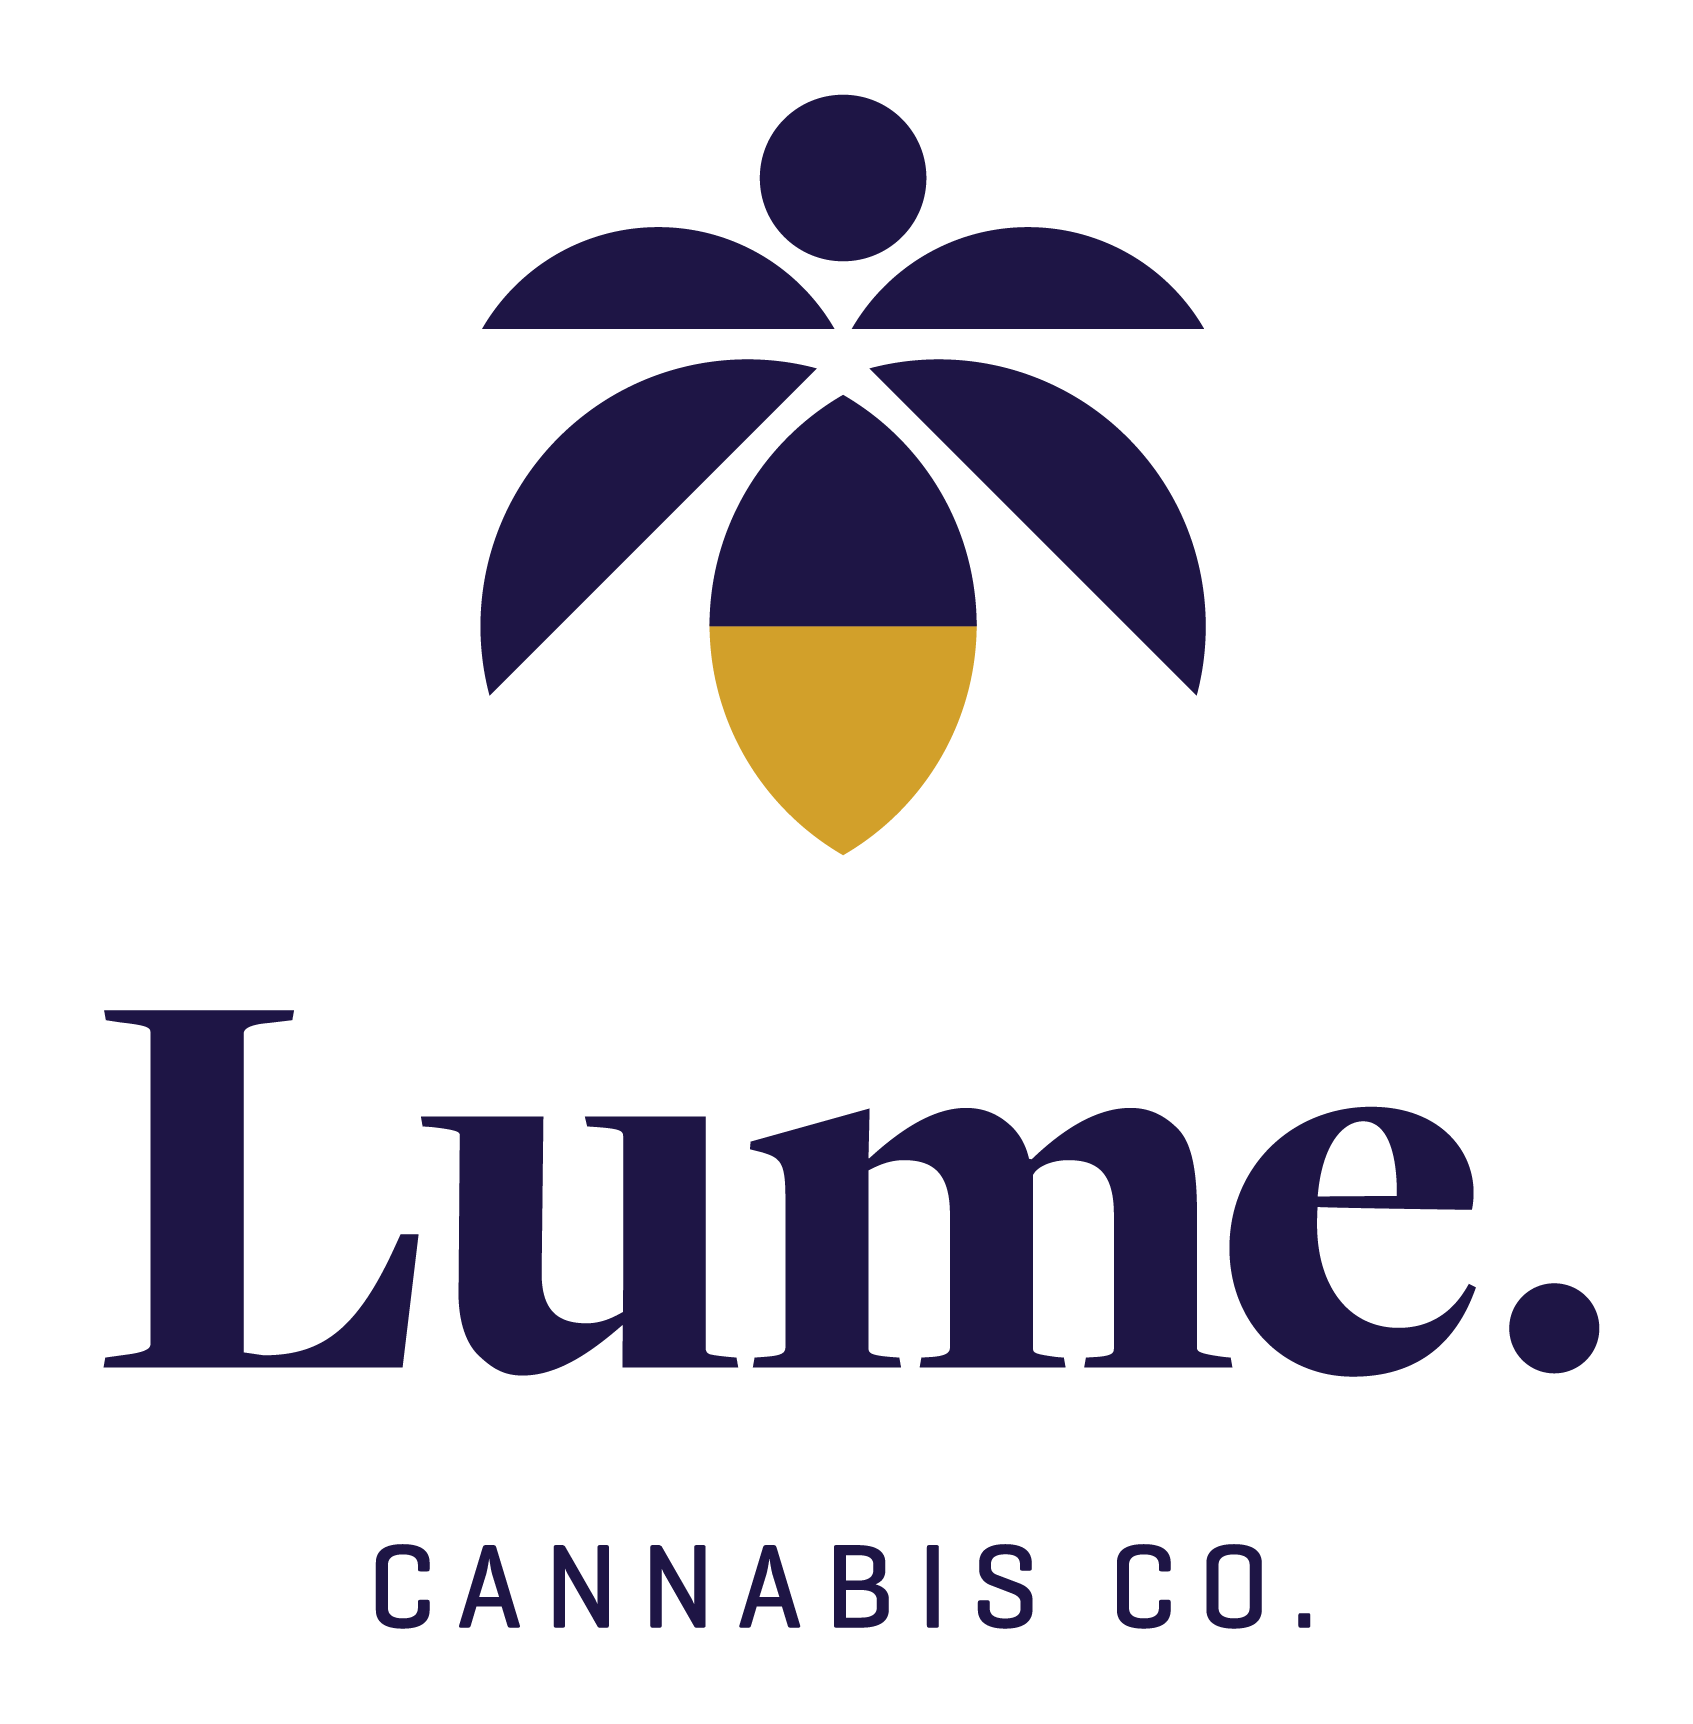 Lume Cannabis Co.